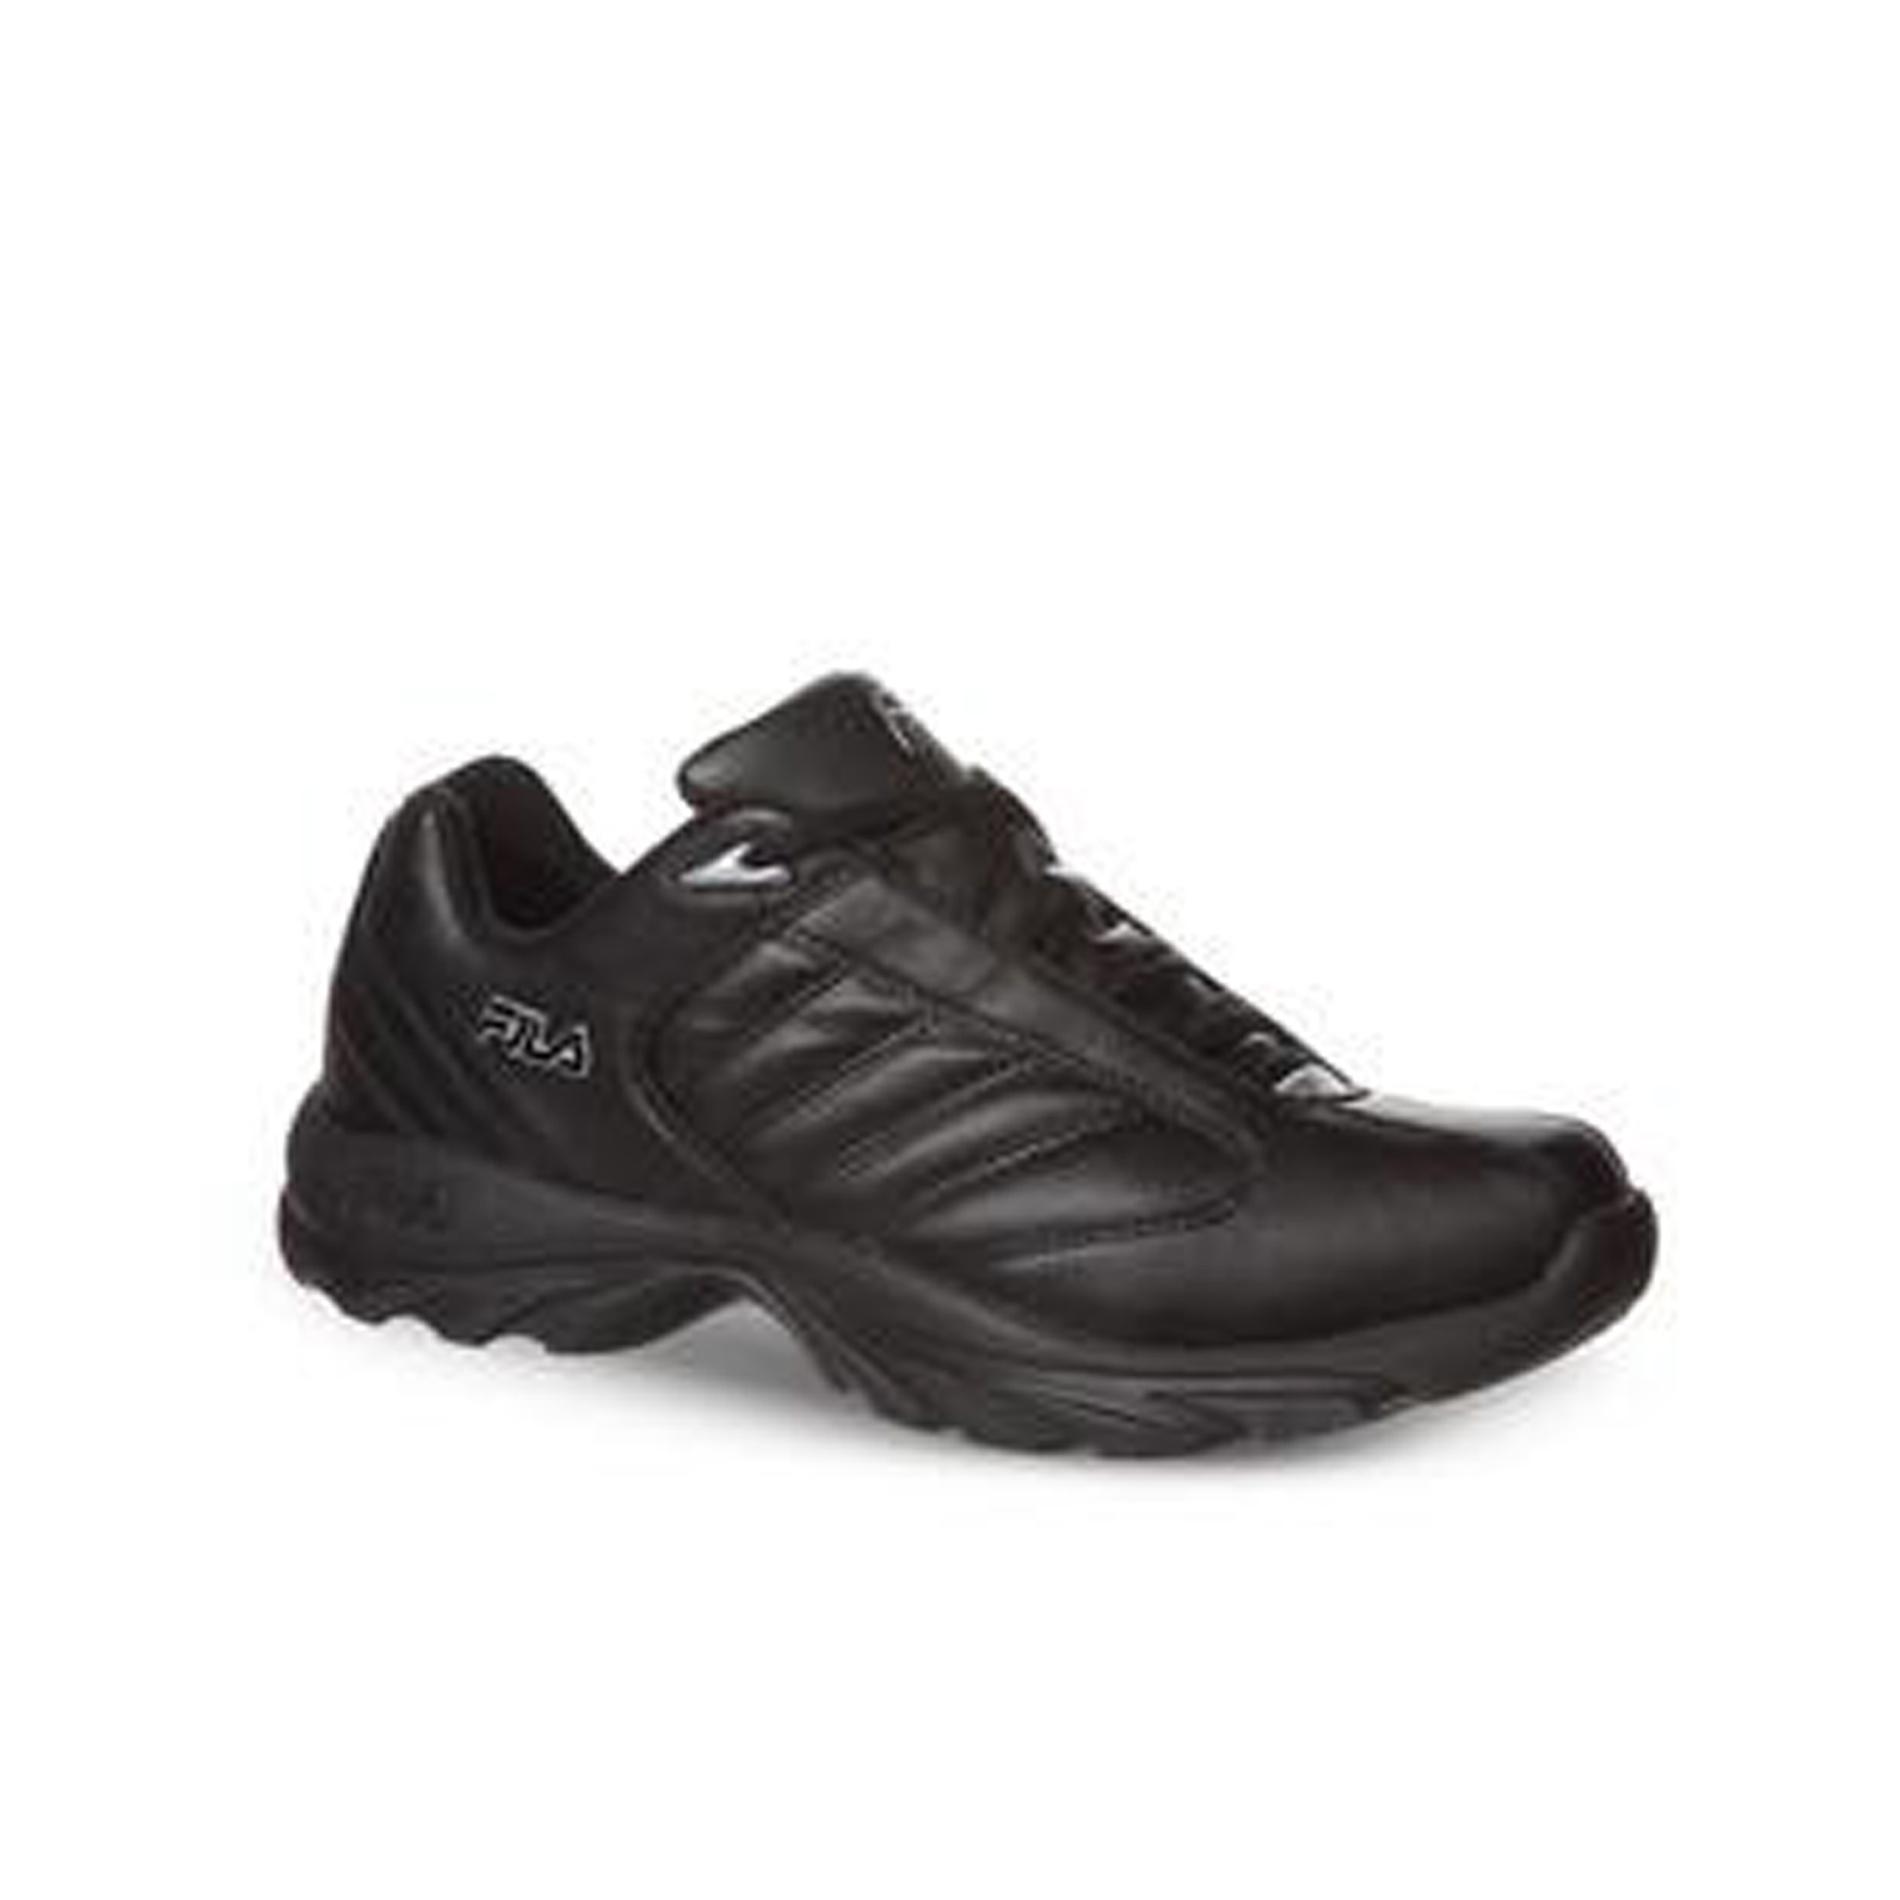 Fila Men's Torino 3 Sneaker - Black